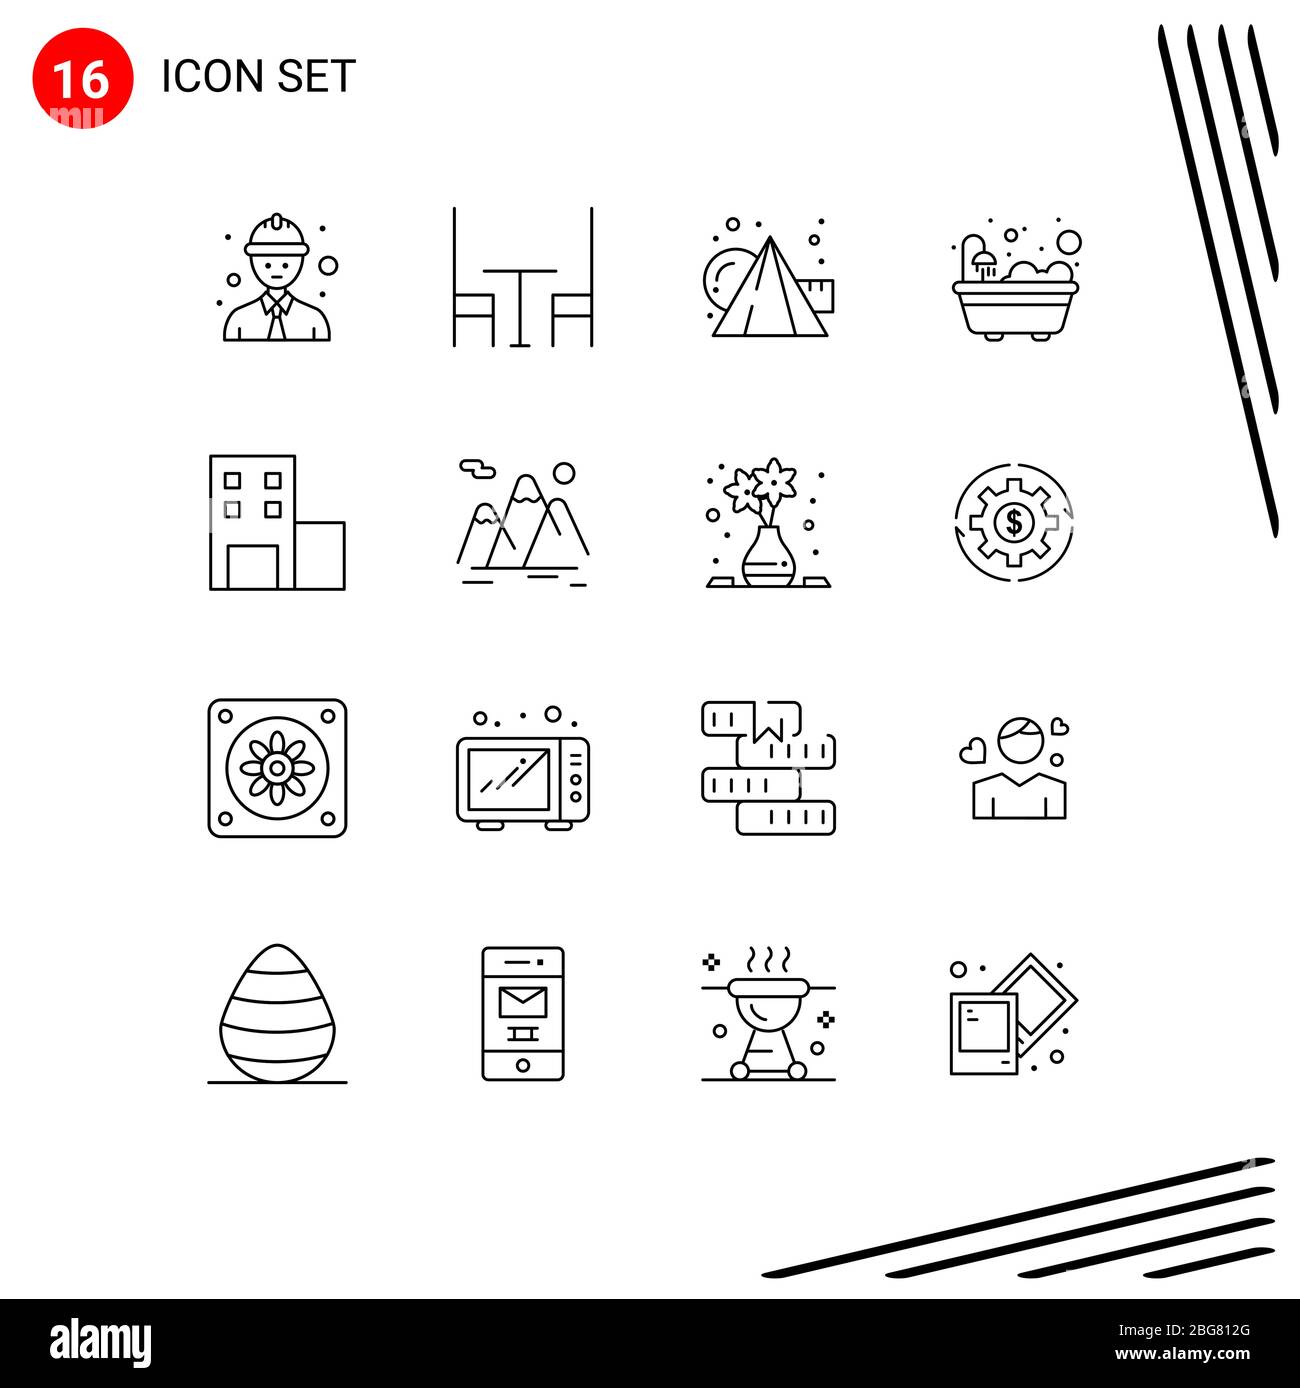 Ensemble de 16 icônes modernes de l'interface utilisateur symboles signes pour la montagne, l'université, la peinture, l'école, la douche Editable Vector Design Elements Illustration de Vecteur